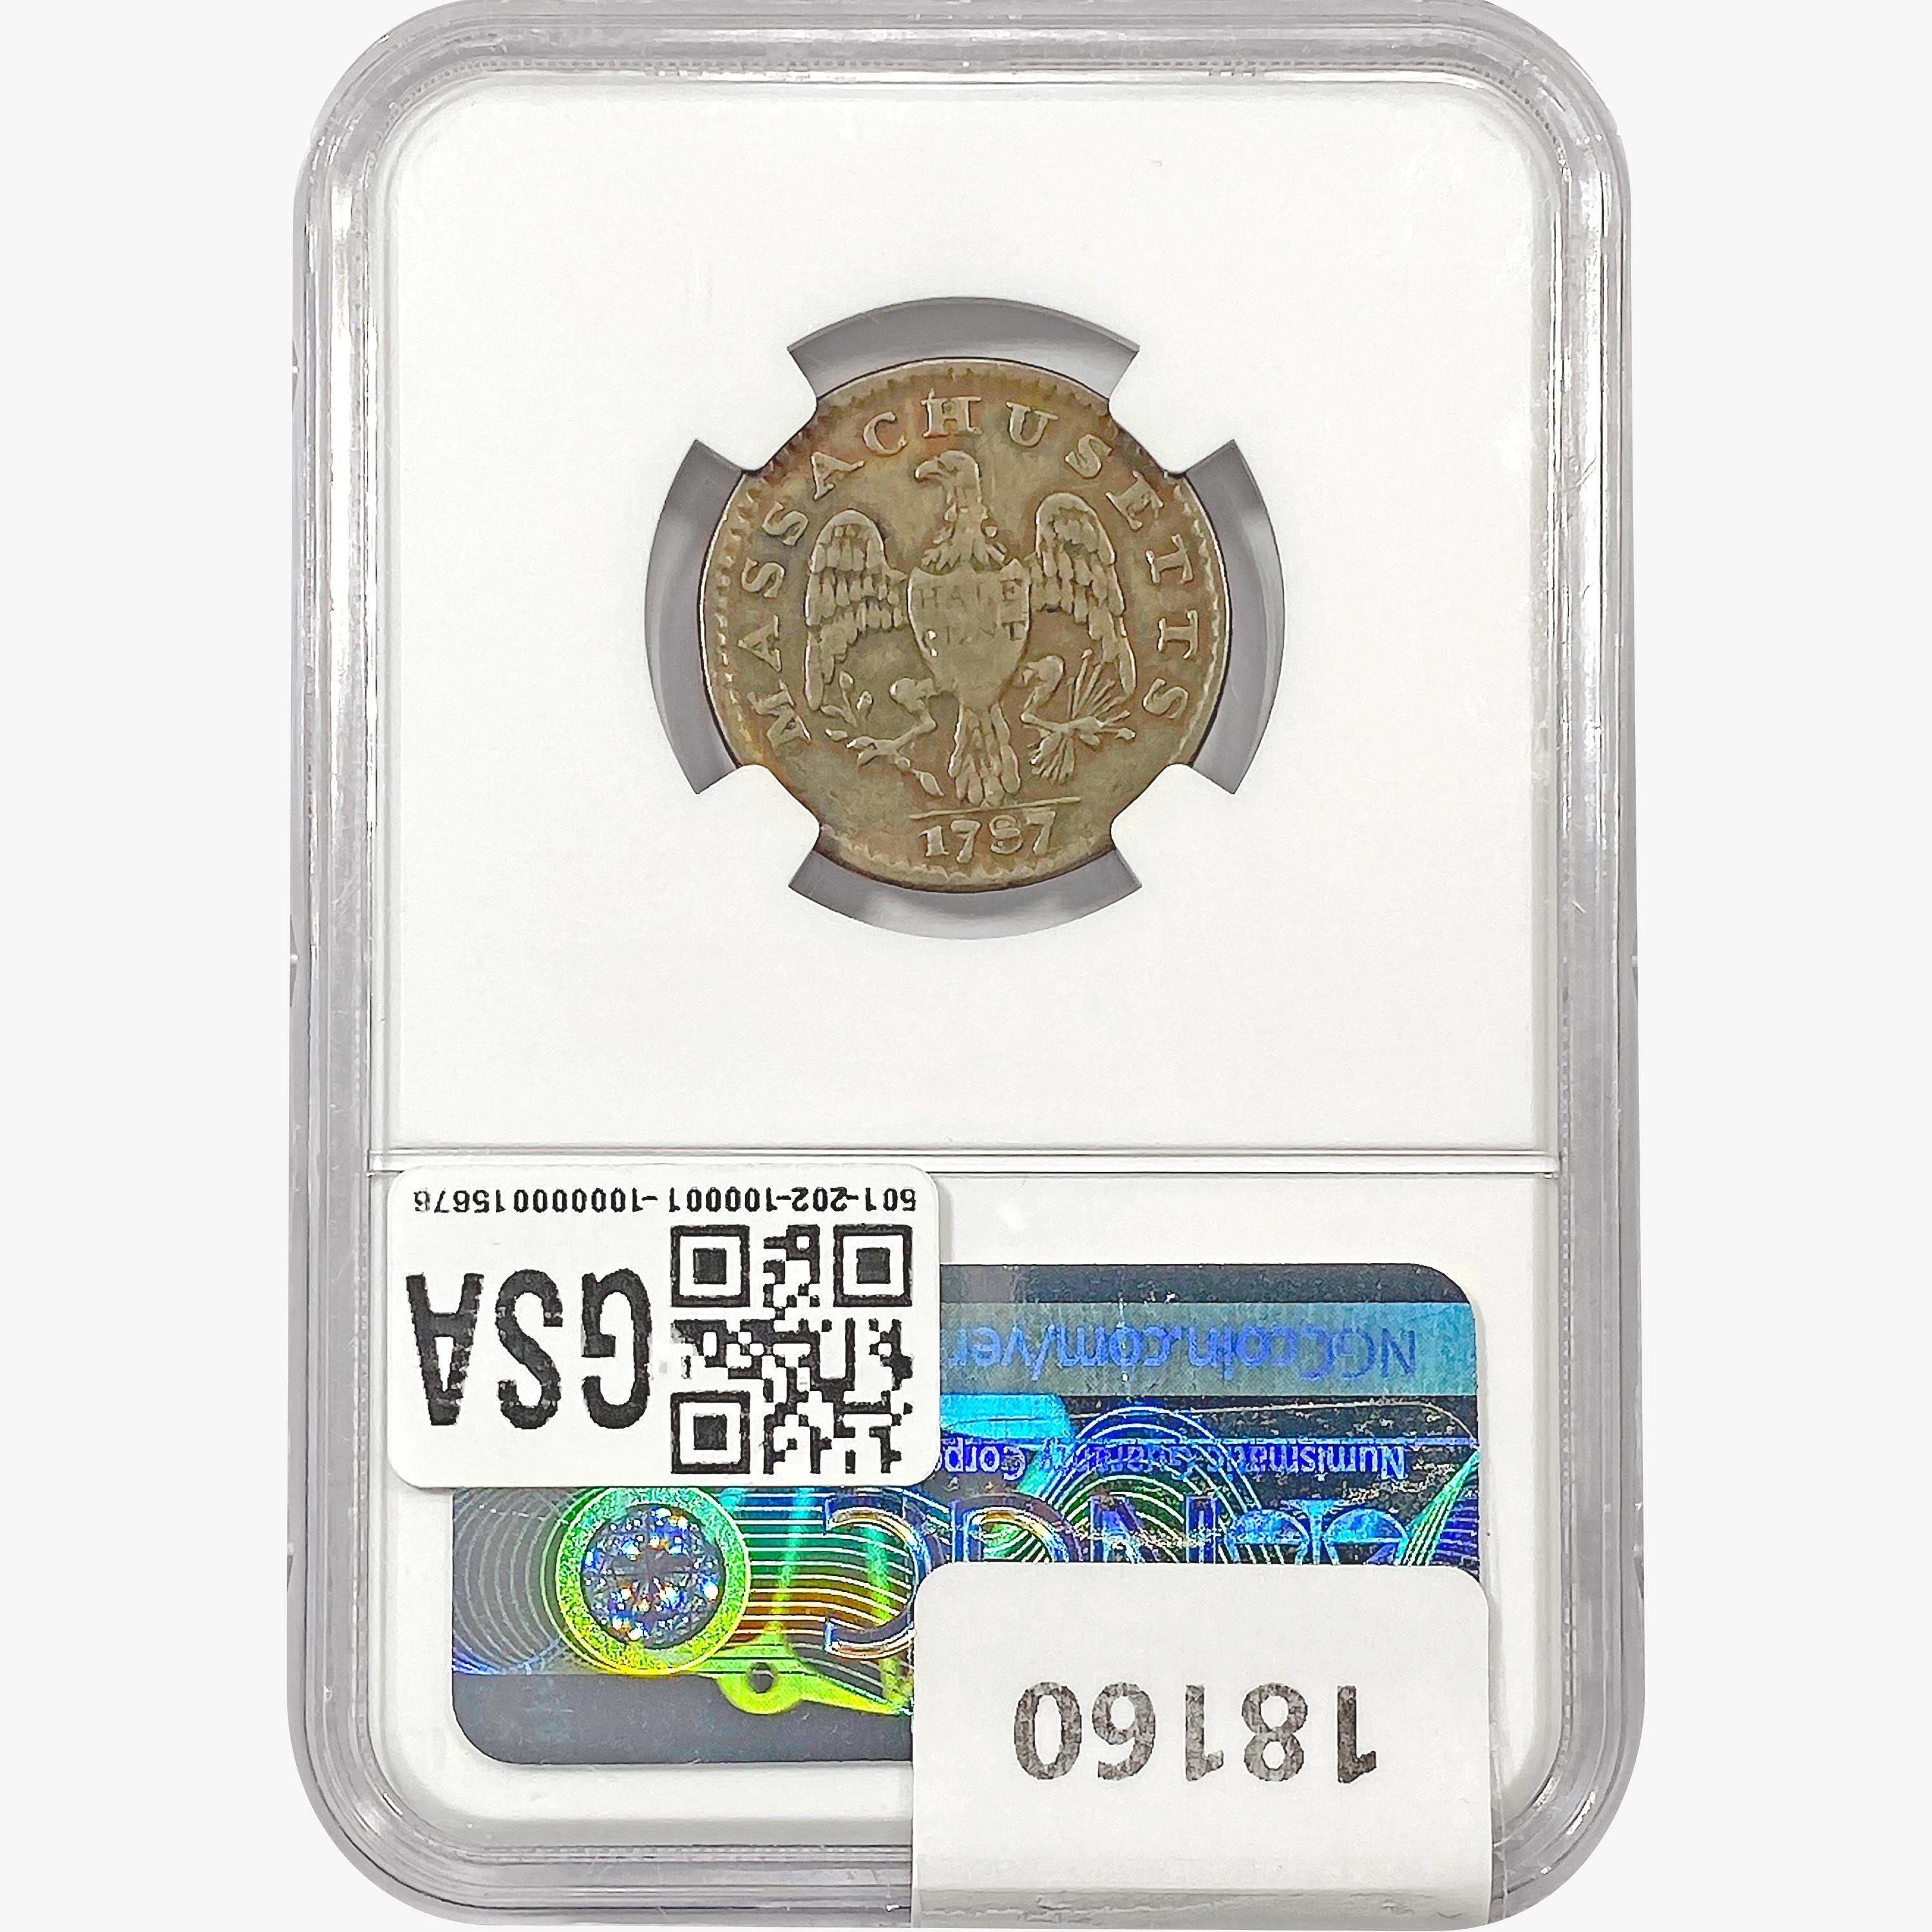 1787 Massachusetts Half Cent NGC VF30 BN